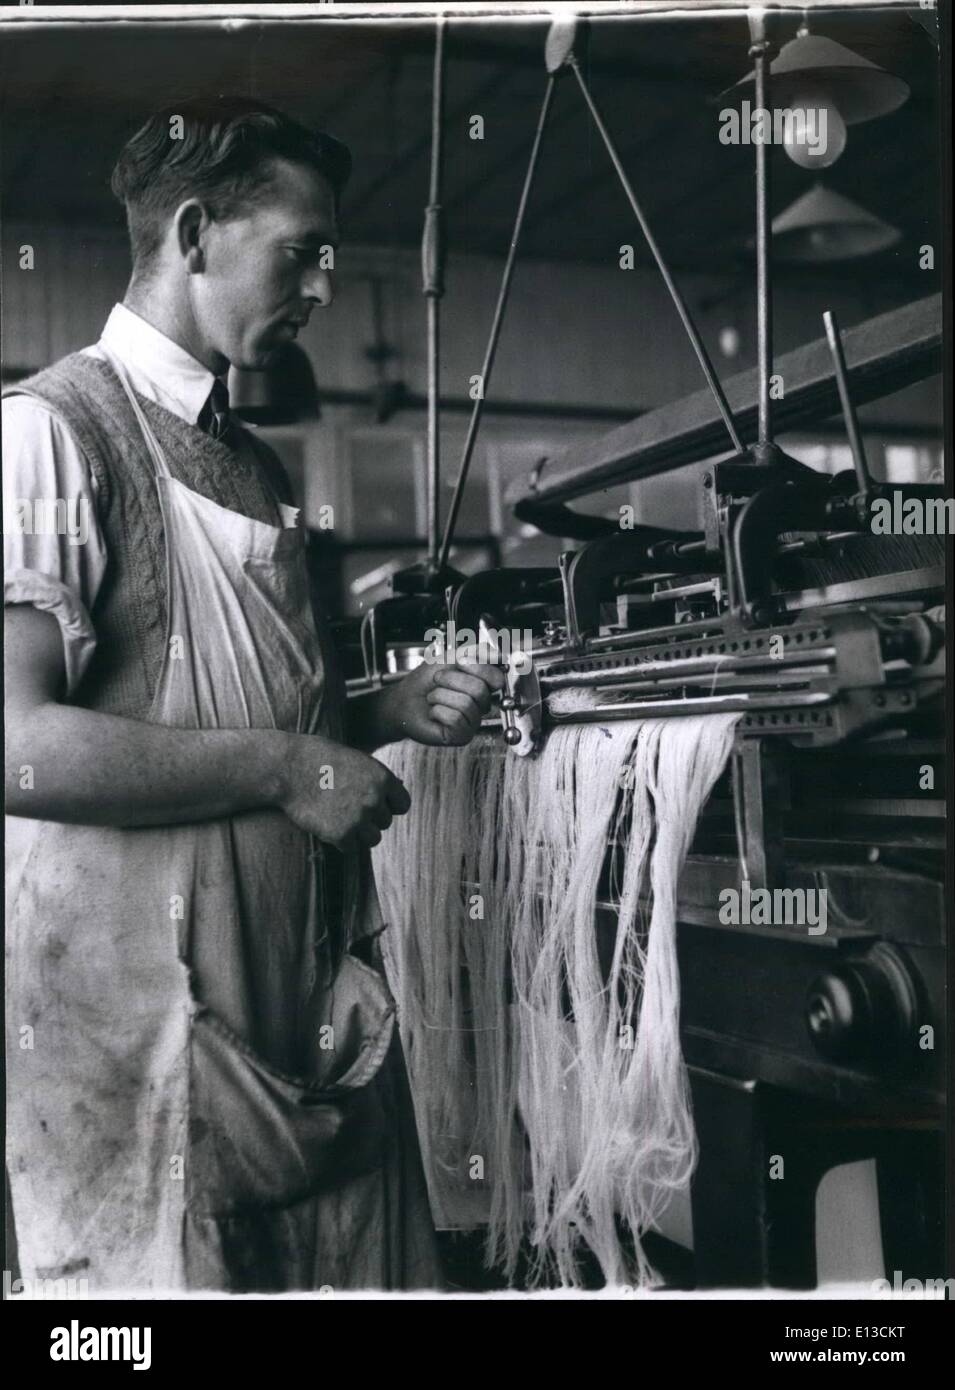 Verziehen Sie 29. Februar 2012 - Ting; Mr John Fehay betreibt eine Verwerfung, die Maschine zu binden. Stockfoto